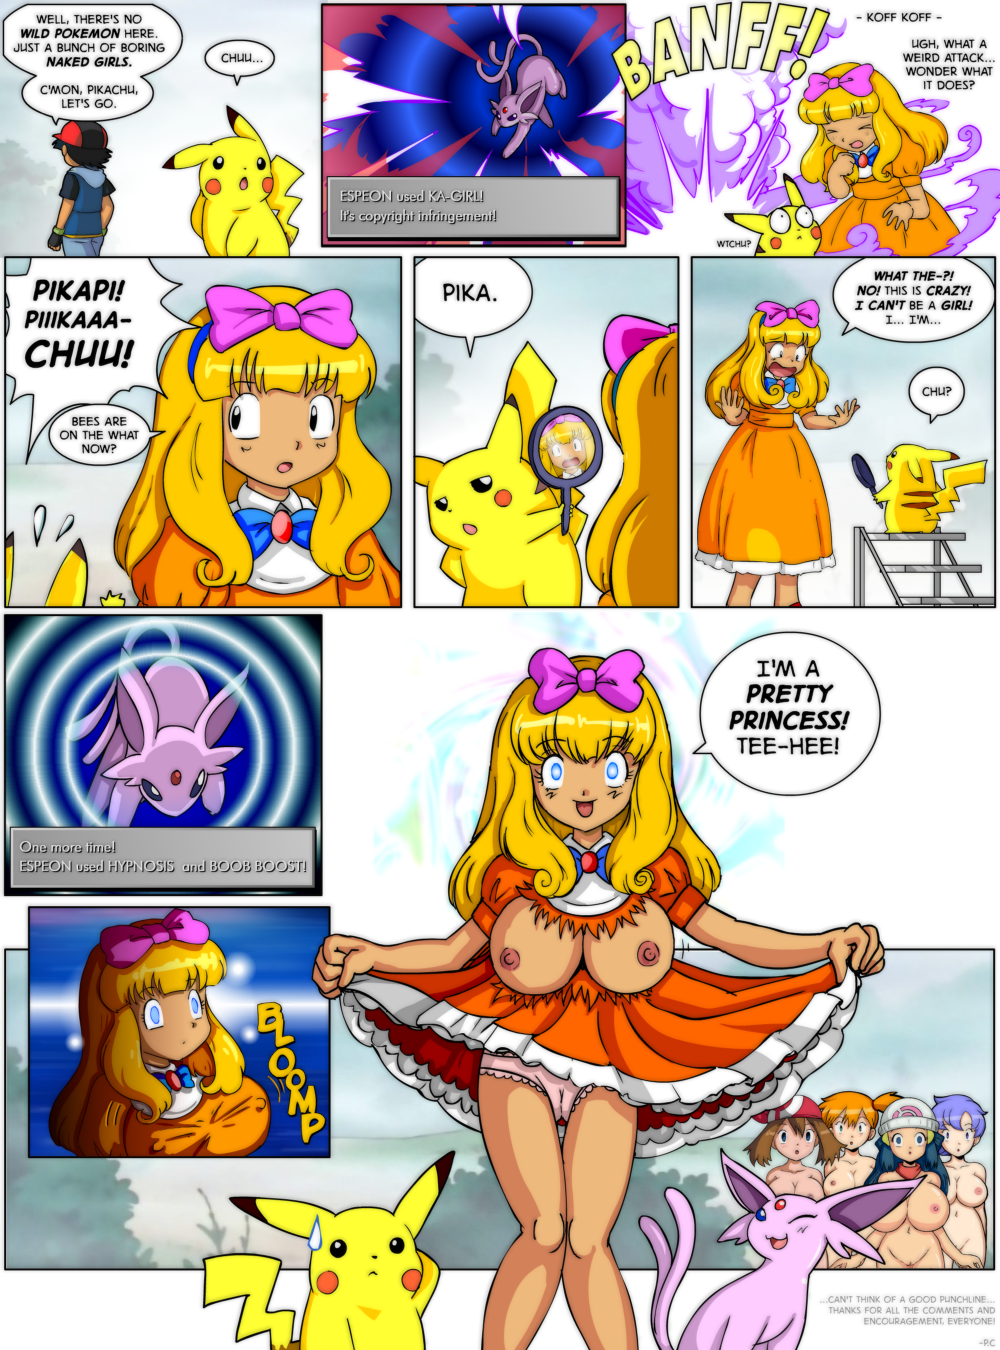 Cartoon porn pokemon misty may dawn-new porn